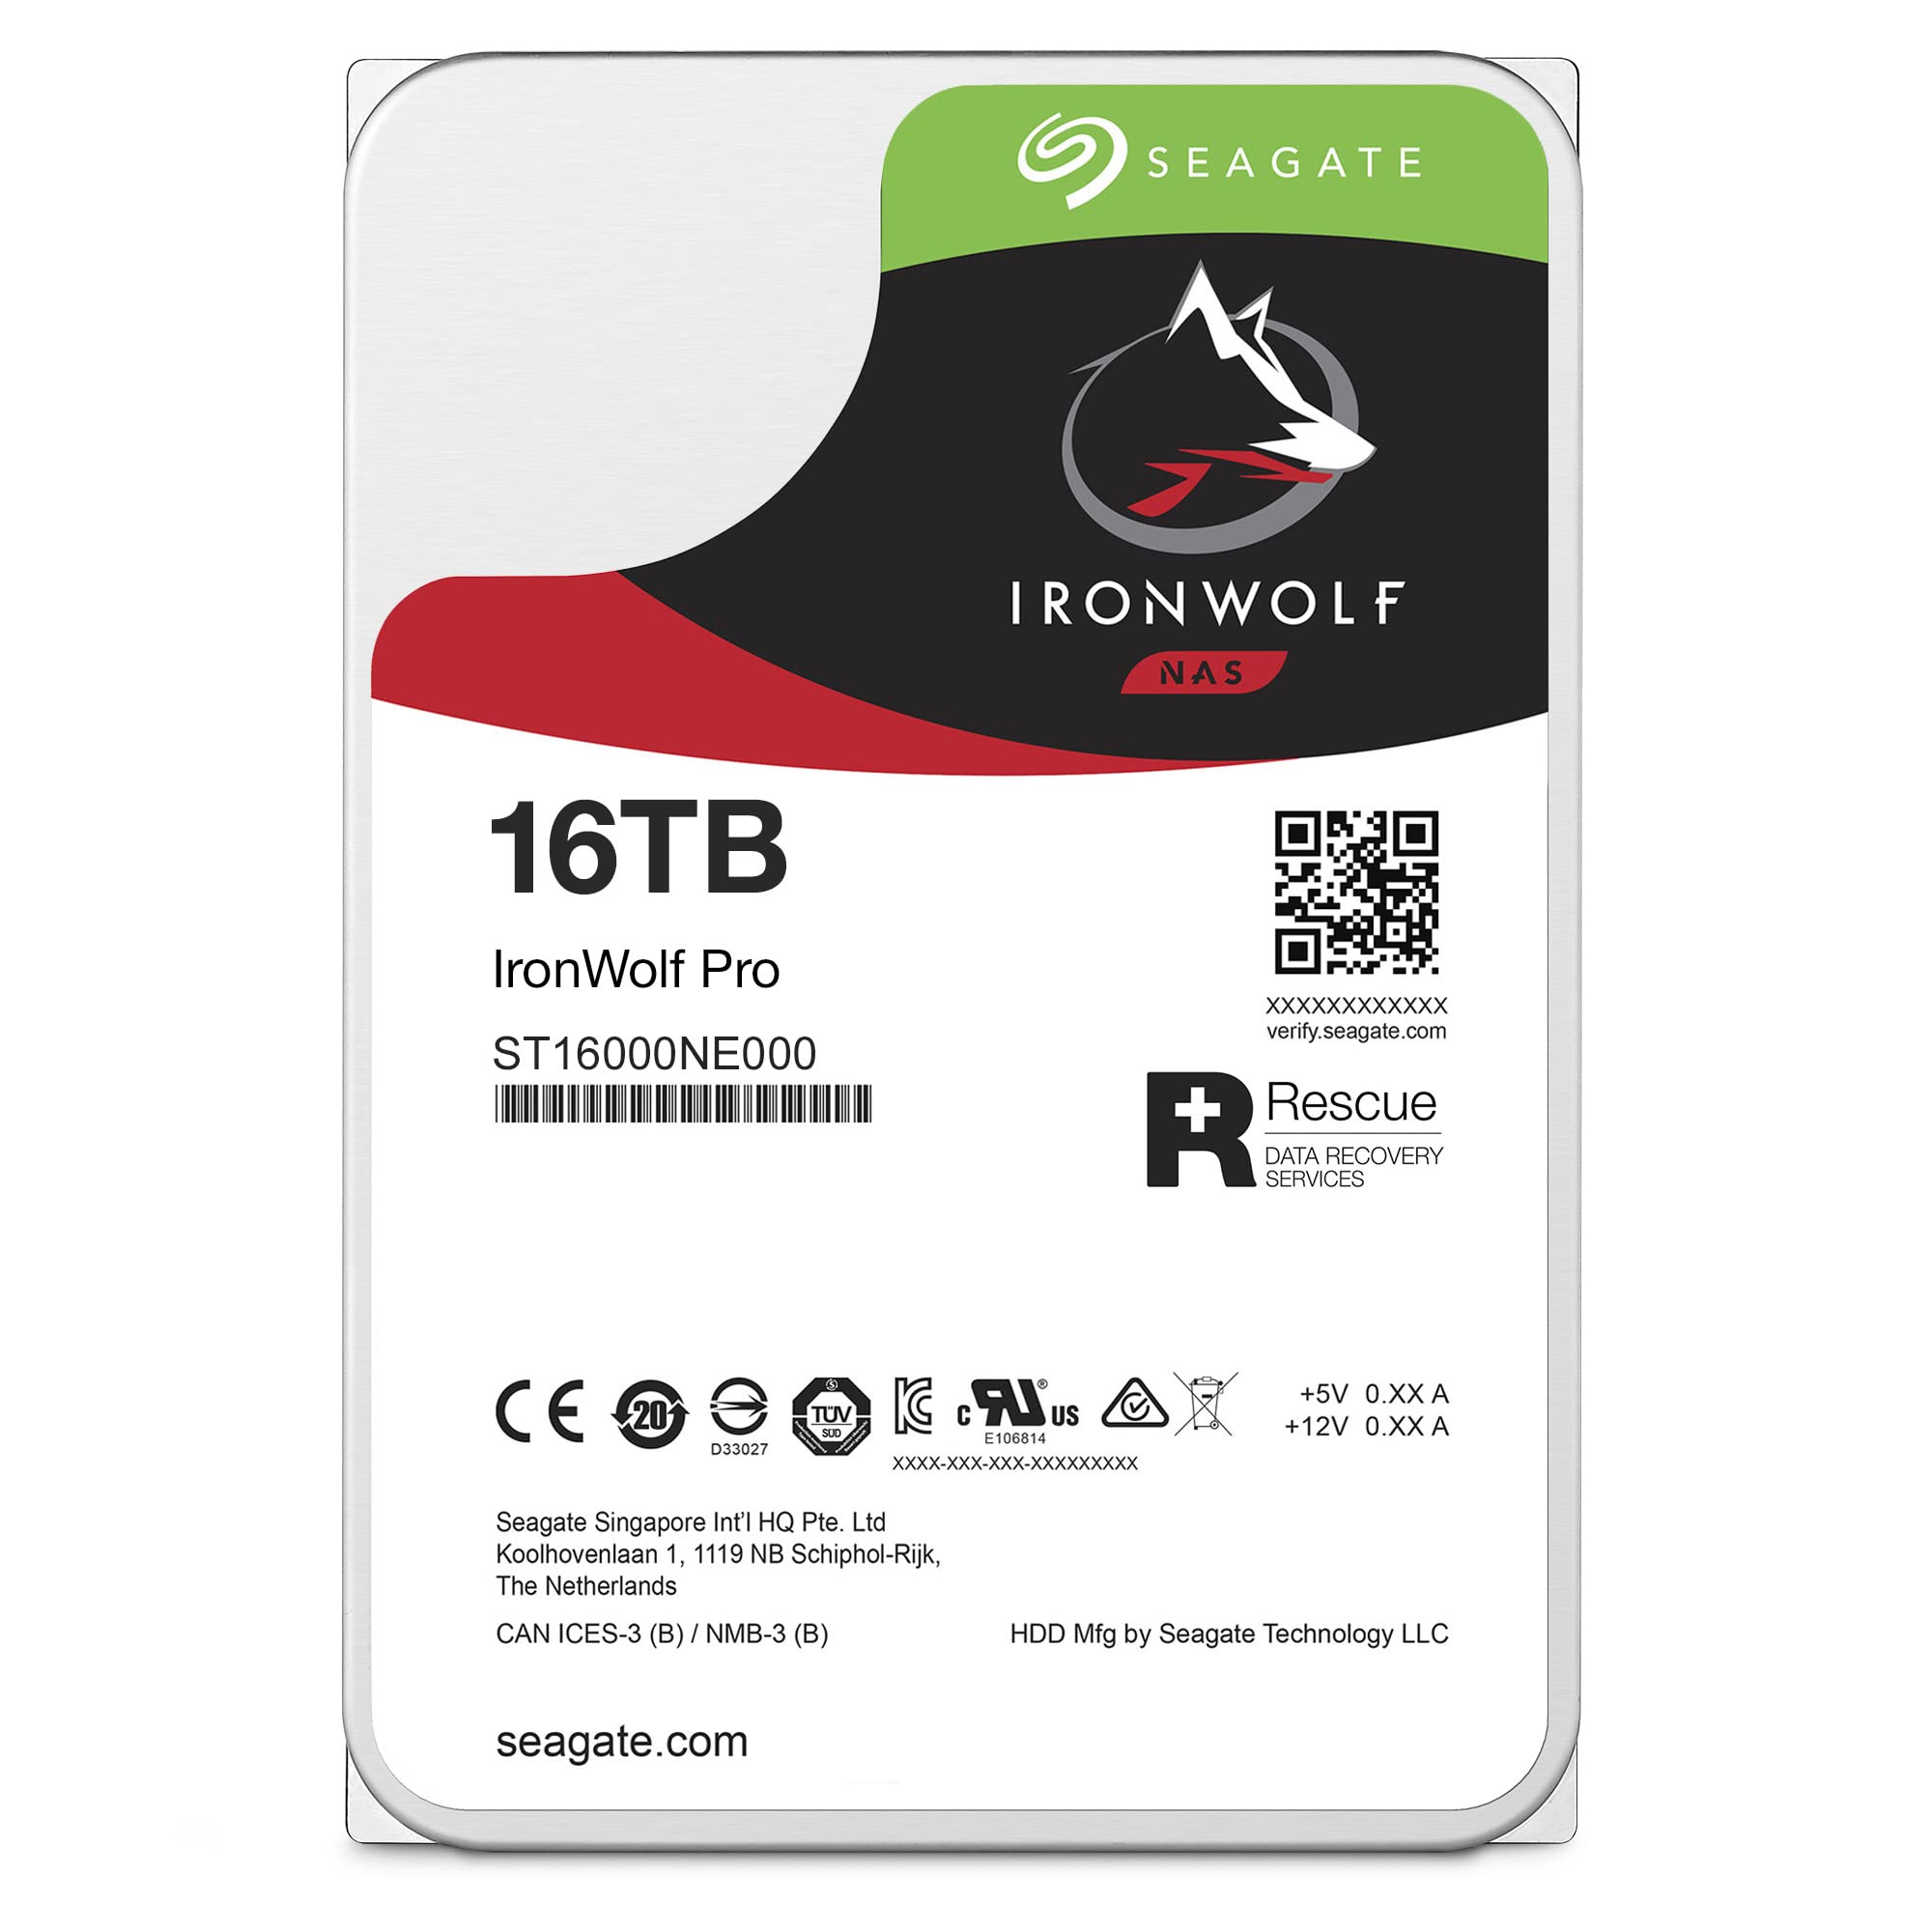 Seagate Ironwolf Pro 16TB